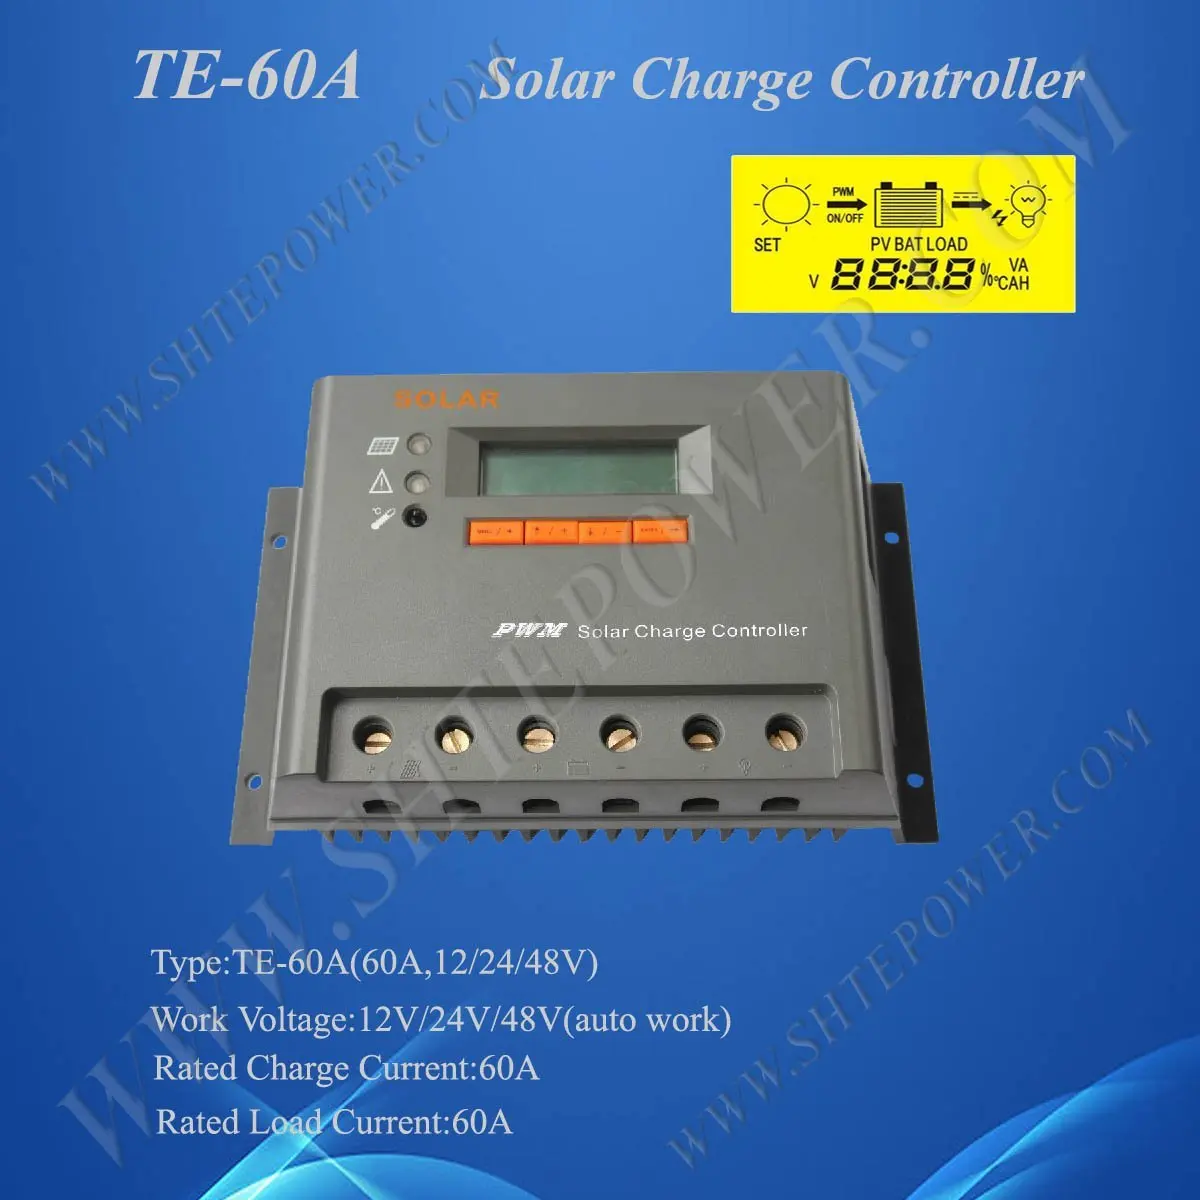 Солнечный регулятор 60A 12 V/24 V/48 V автоматическая работа, от производителя(Сертификация CE& по ограничению на использование опасных материалов в производстве электрического и электронного оборудования, утвержденный